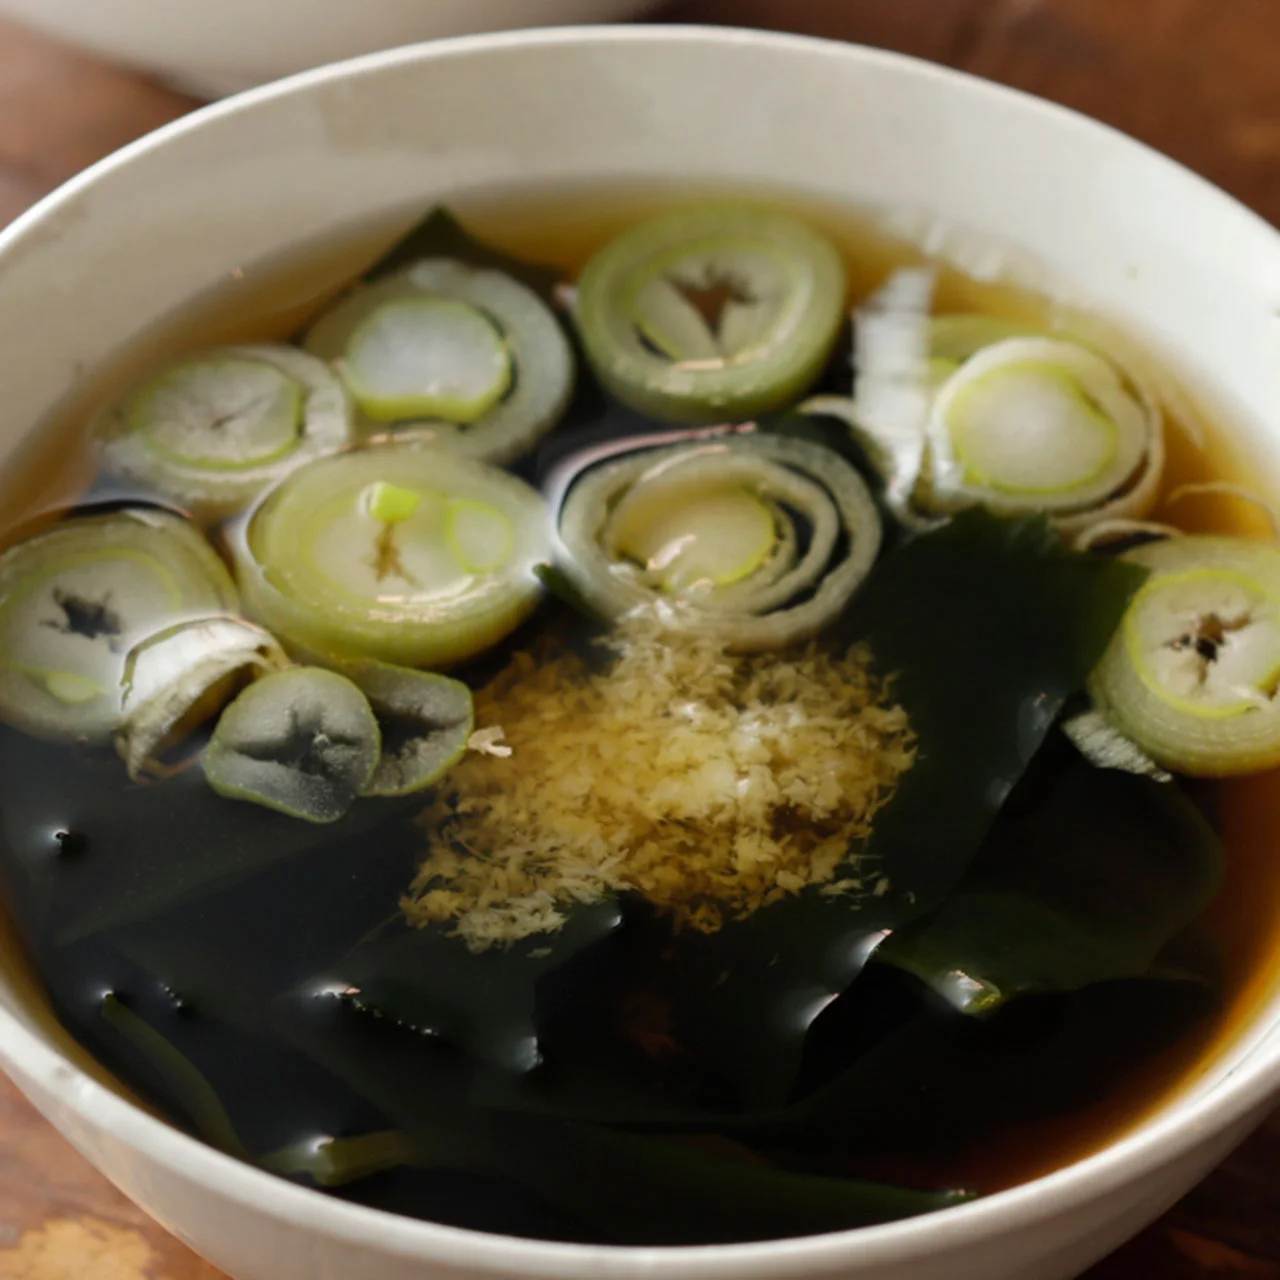 わかめとねぎのスープ By近藤幸子さんの料理レシピ プロのレシピならレタスクラブ